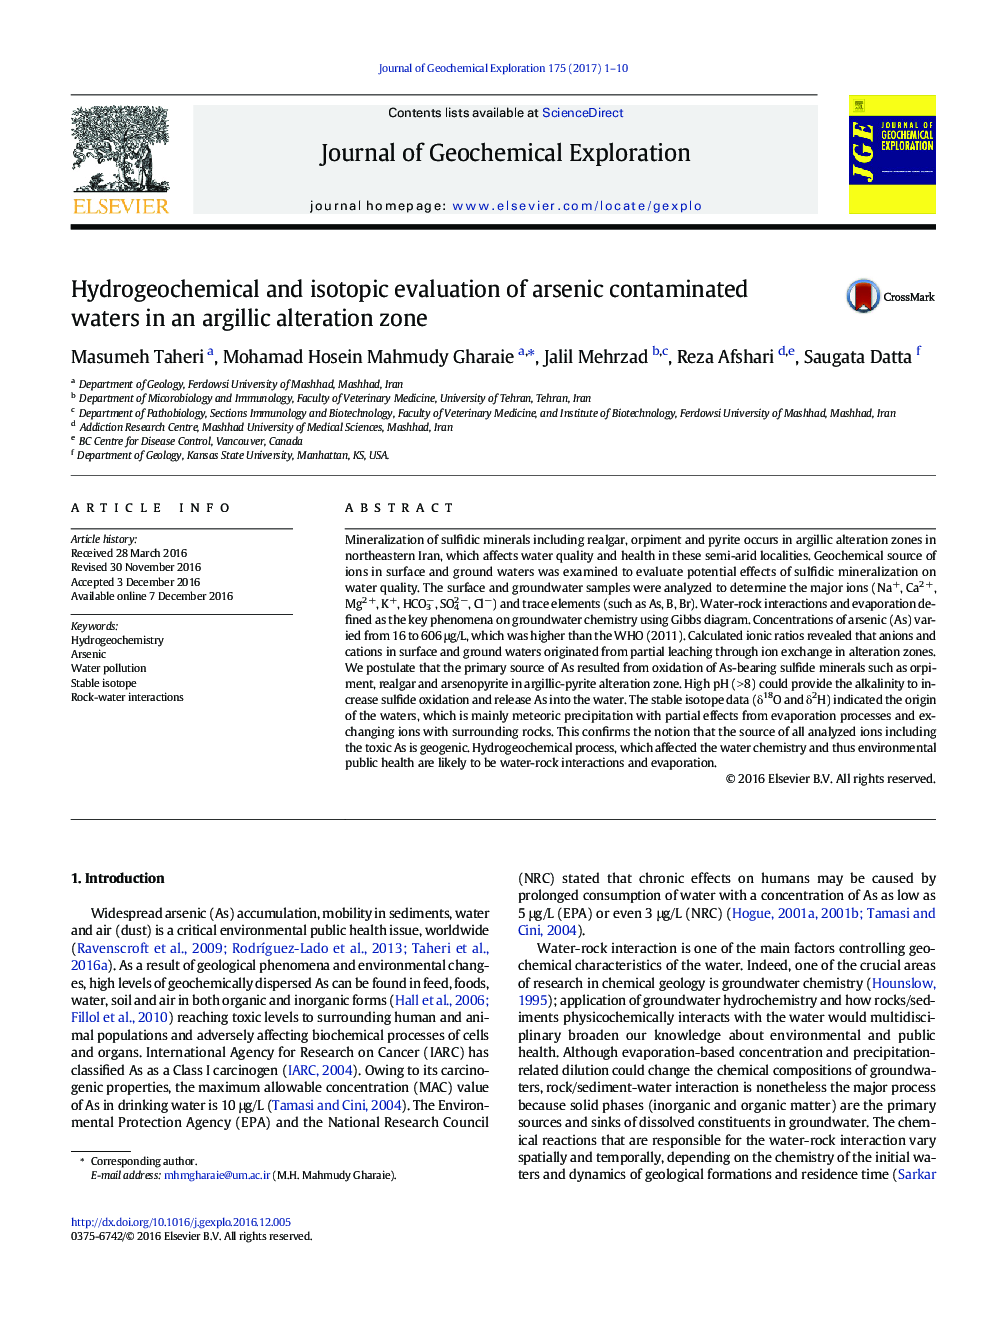 ارزیابی هیدروژئوشیمیایی و ایزوتوپ آبهای آلوده به آرسنیک در یک منطقه دگرگونی آرگولی 